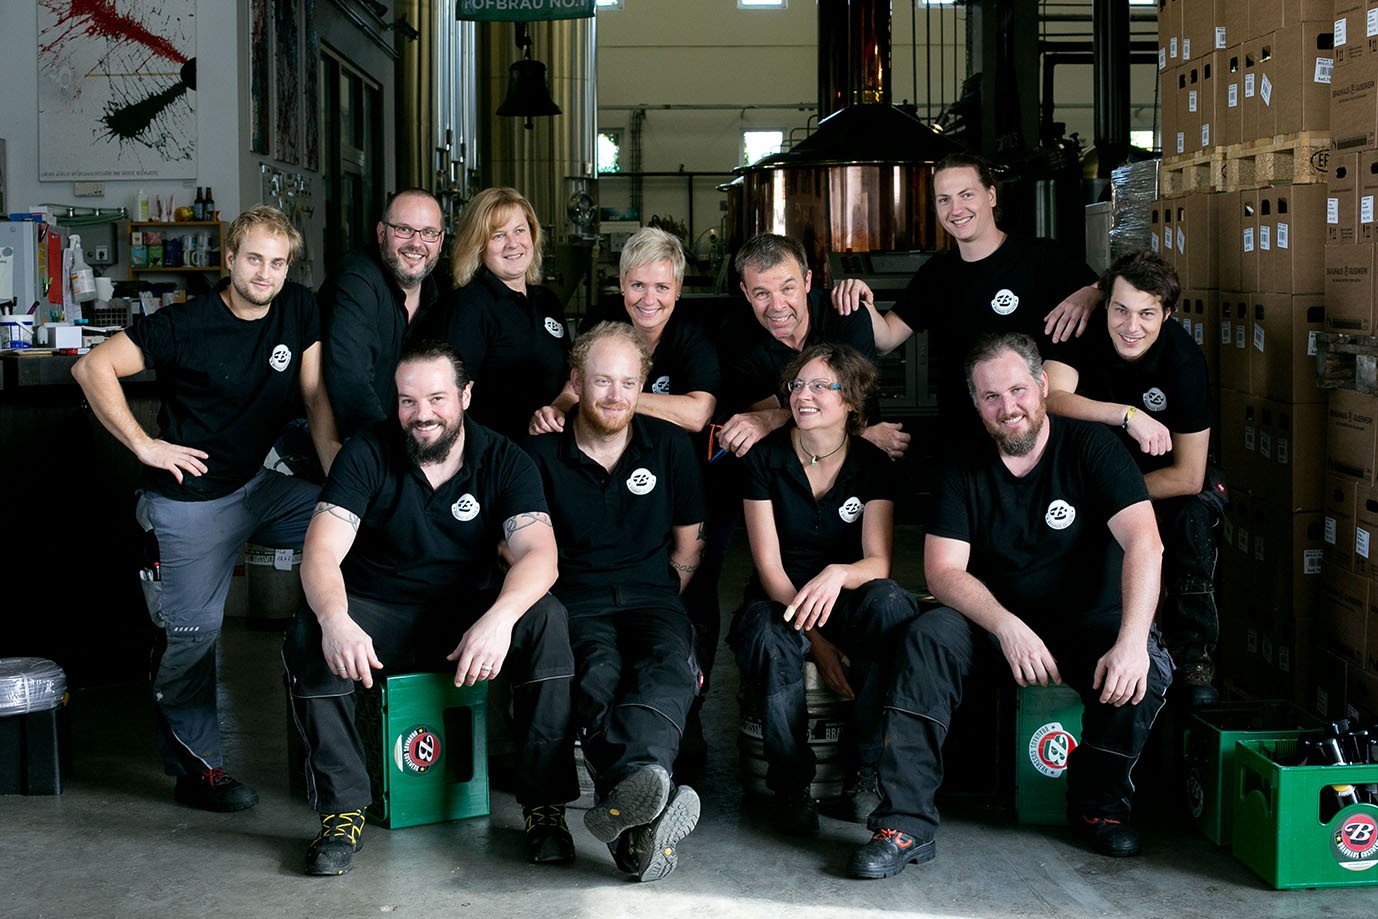 Brauhaus Gusswerk Brauerei aus Österreich